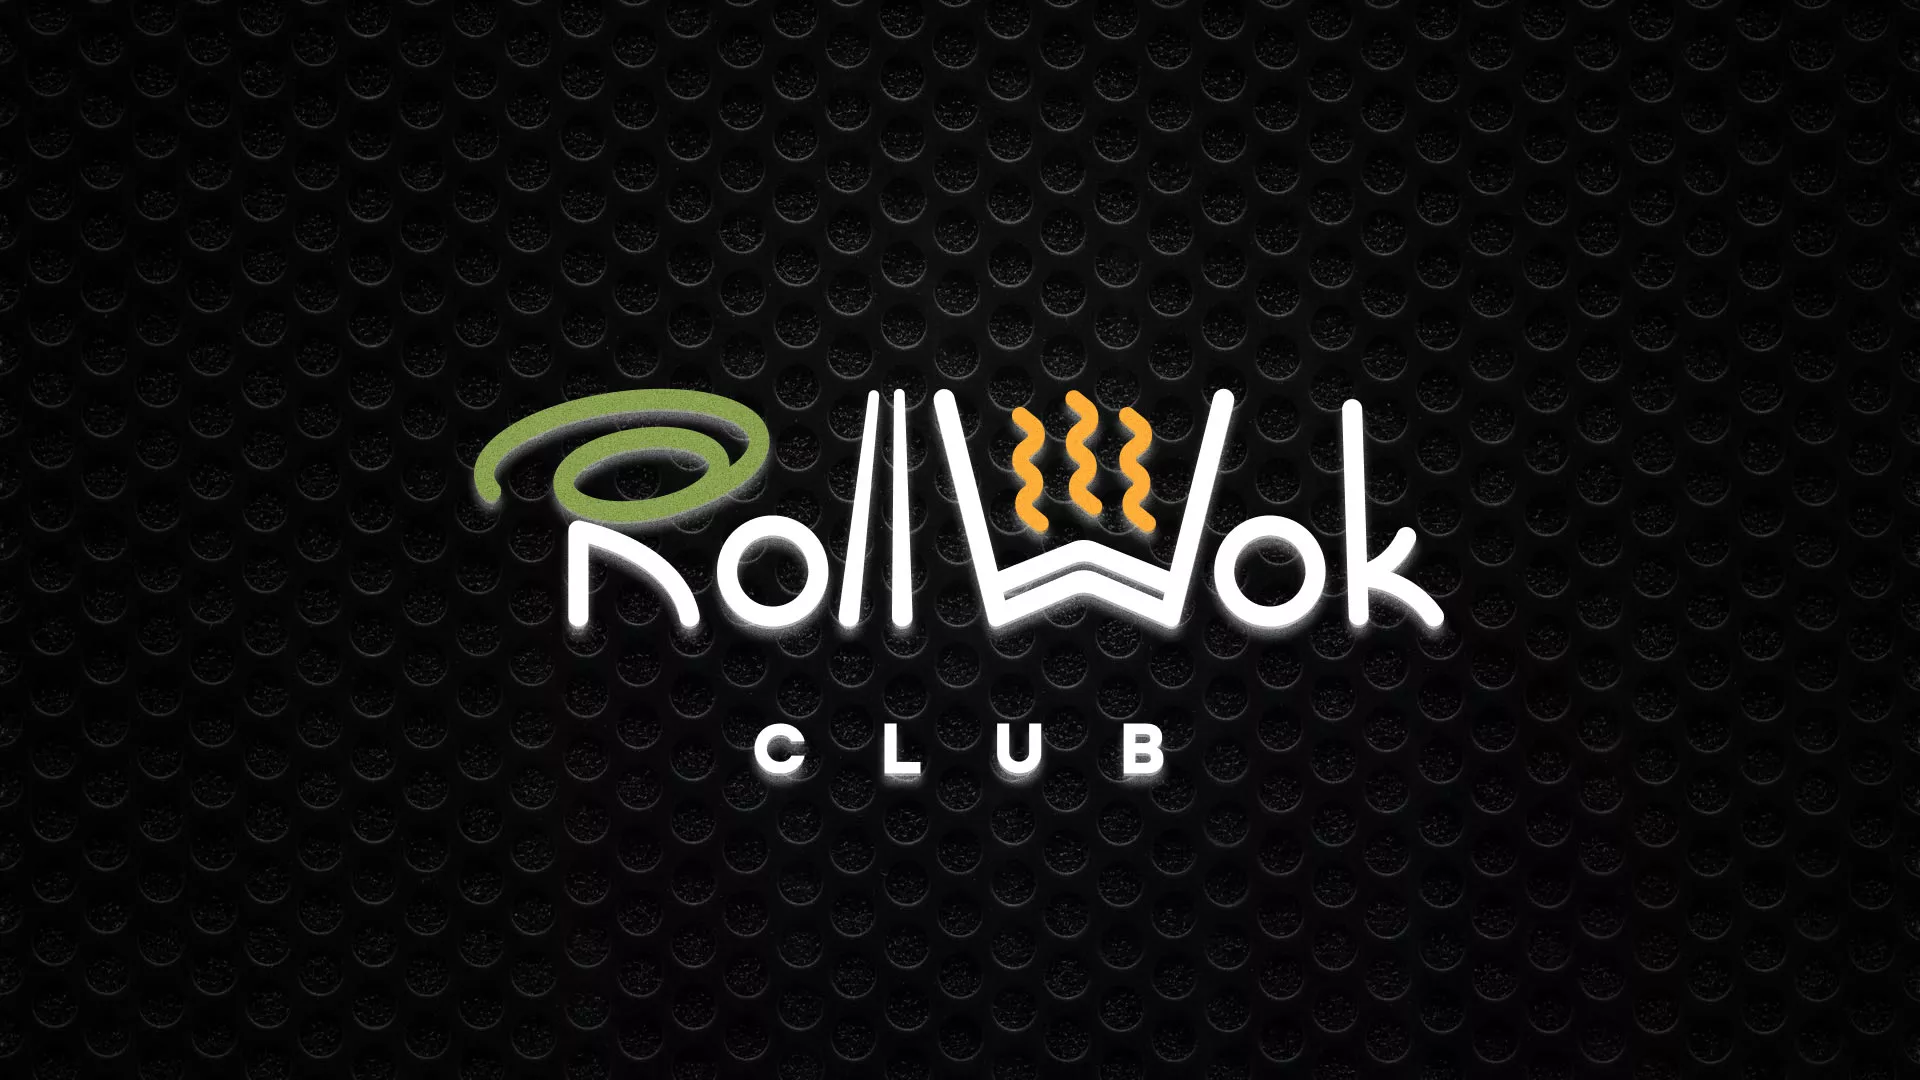 Брендирование торговых точек суши-бара «Roll Wok Club» в Буе